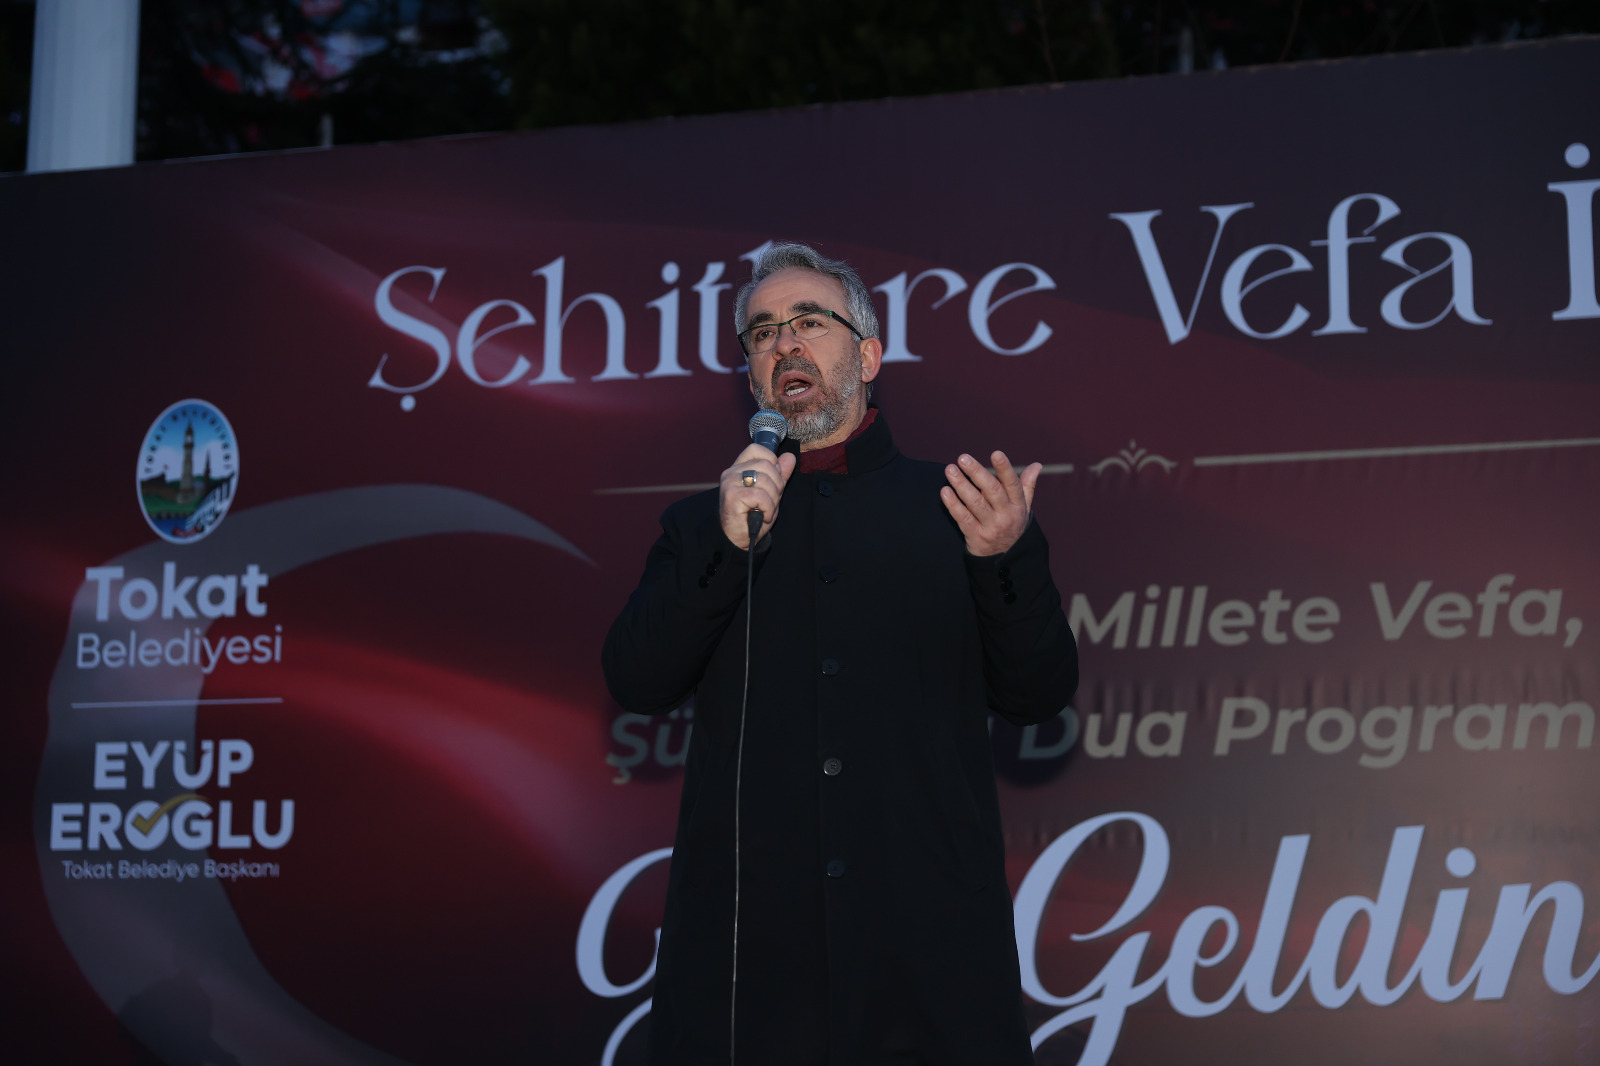 Başkan Eyüp Eroğlu 18 Mart Nedeniyle Şehitlere Vefa İftarında Tokat Halkıyla Bir Araya Geldi